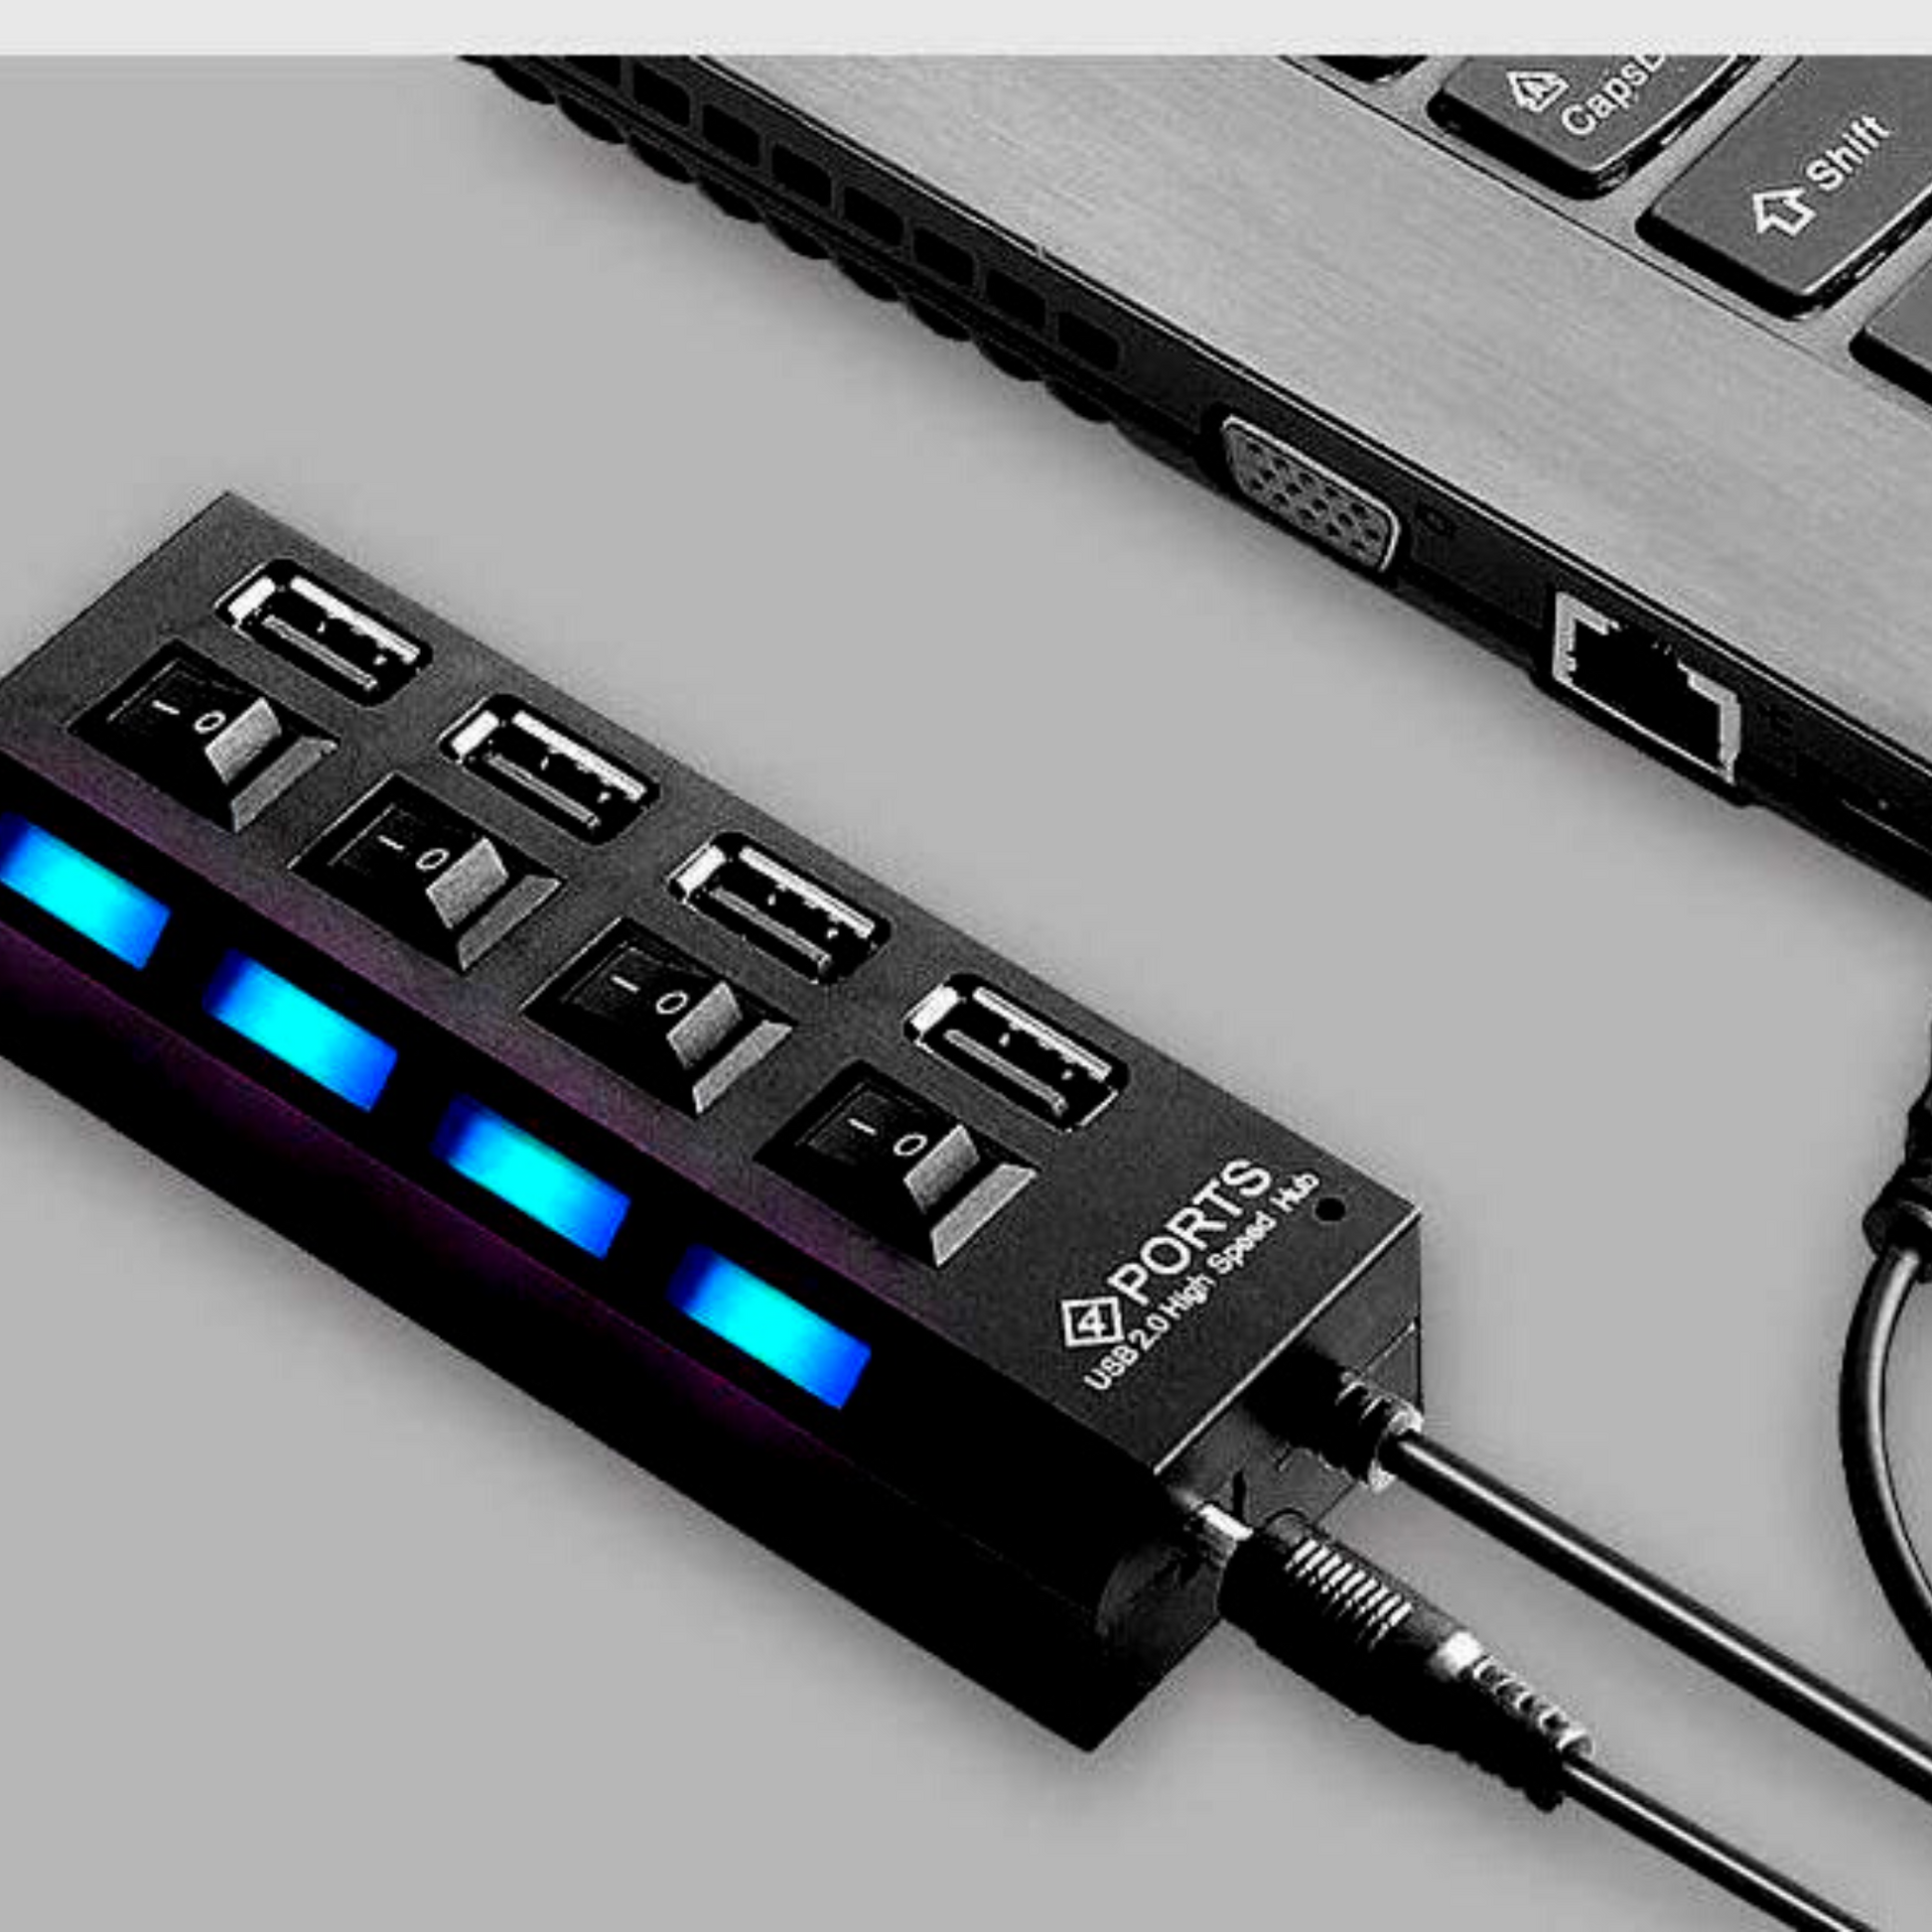 Répartiteur USB 3.0 x4 haute vitesse avec interrupteur – MAGO Plus